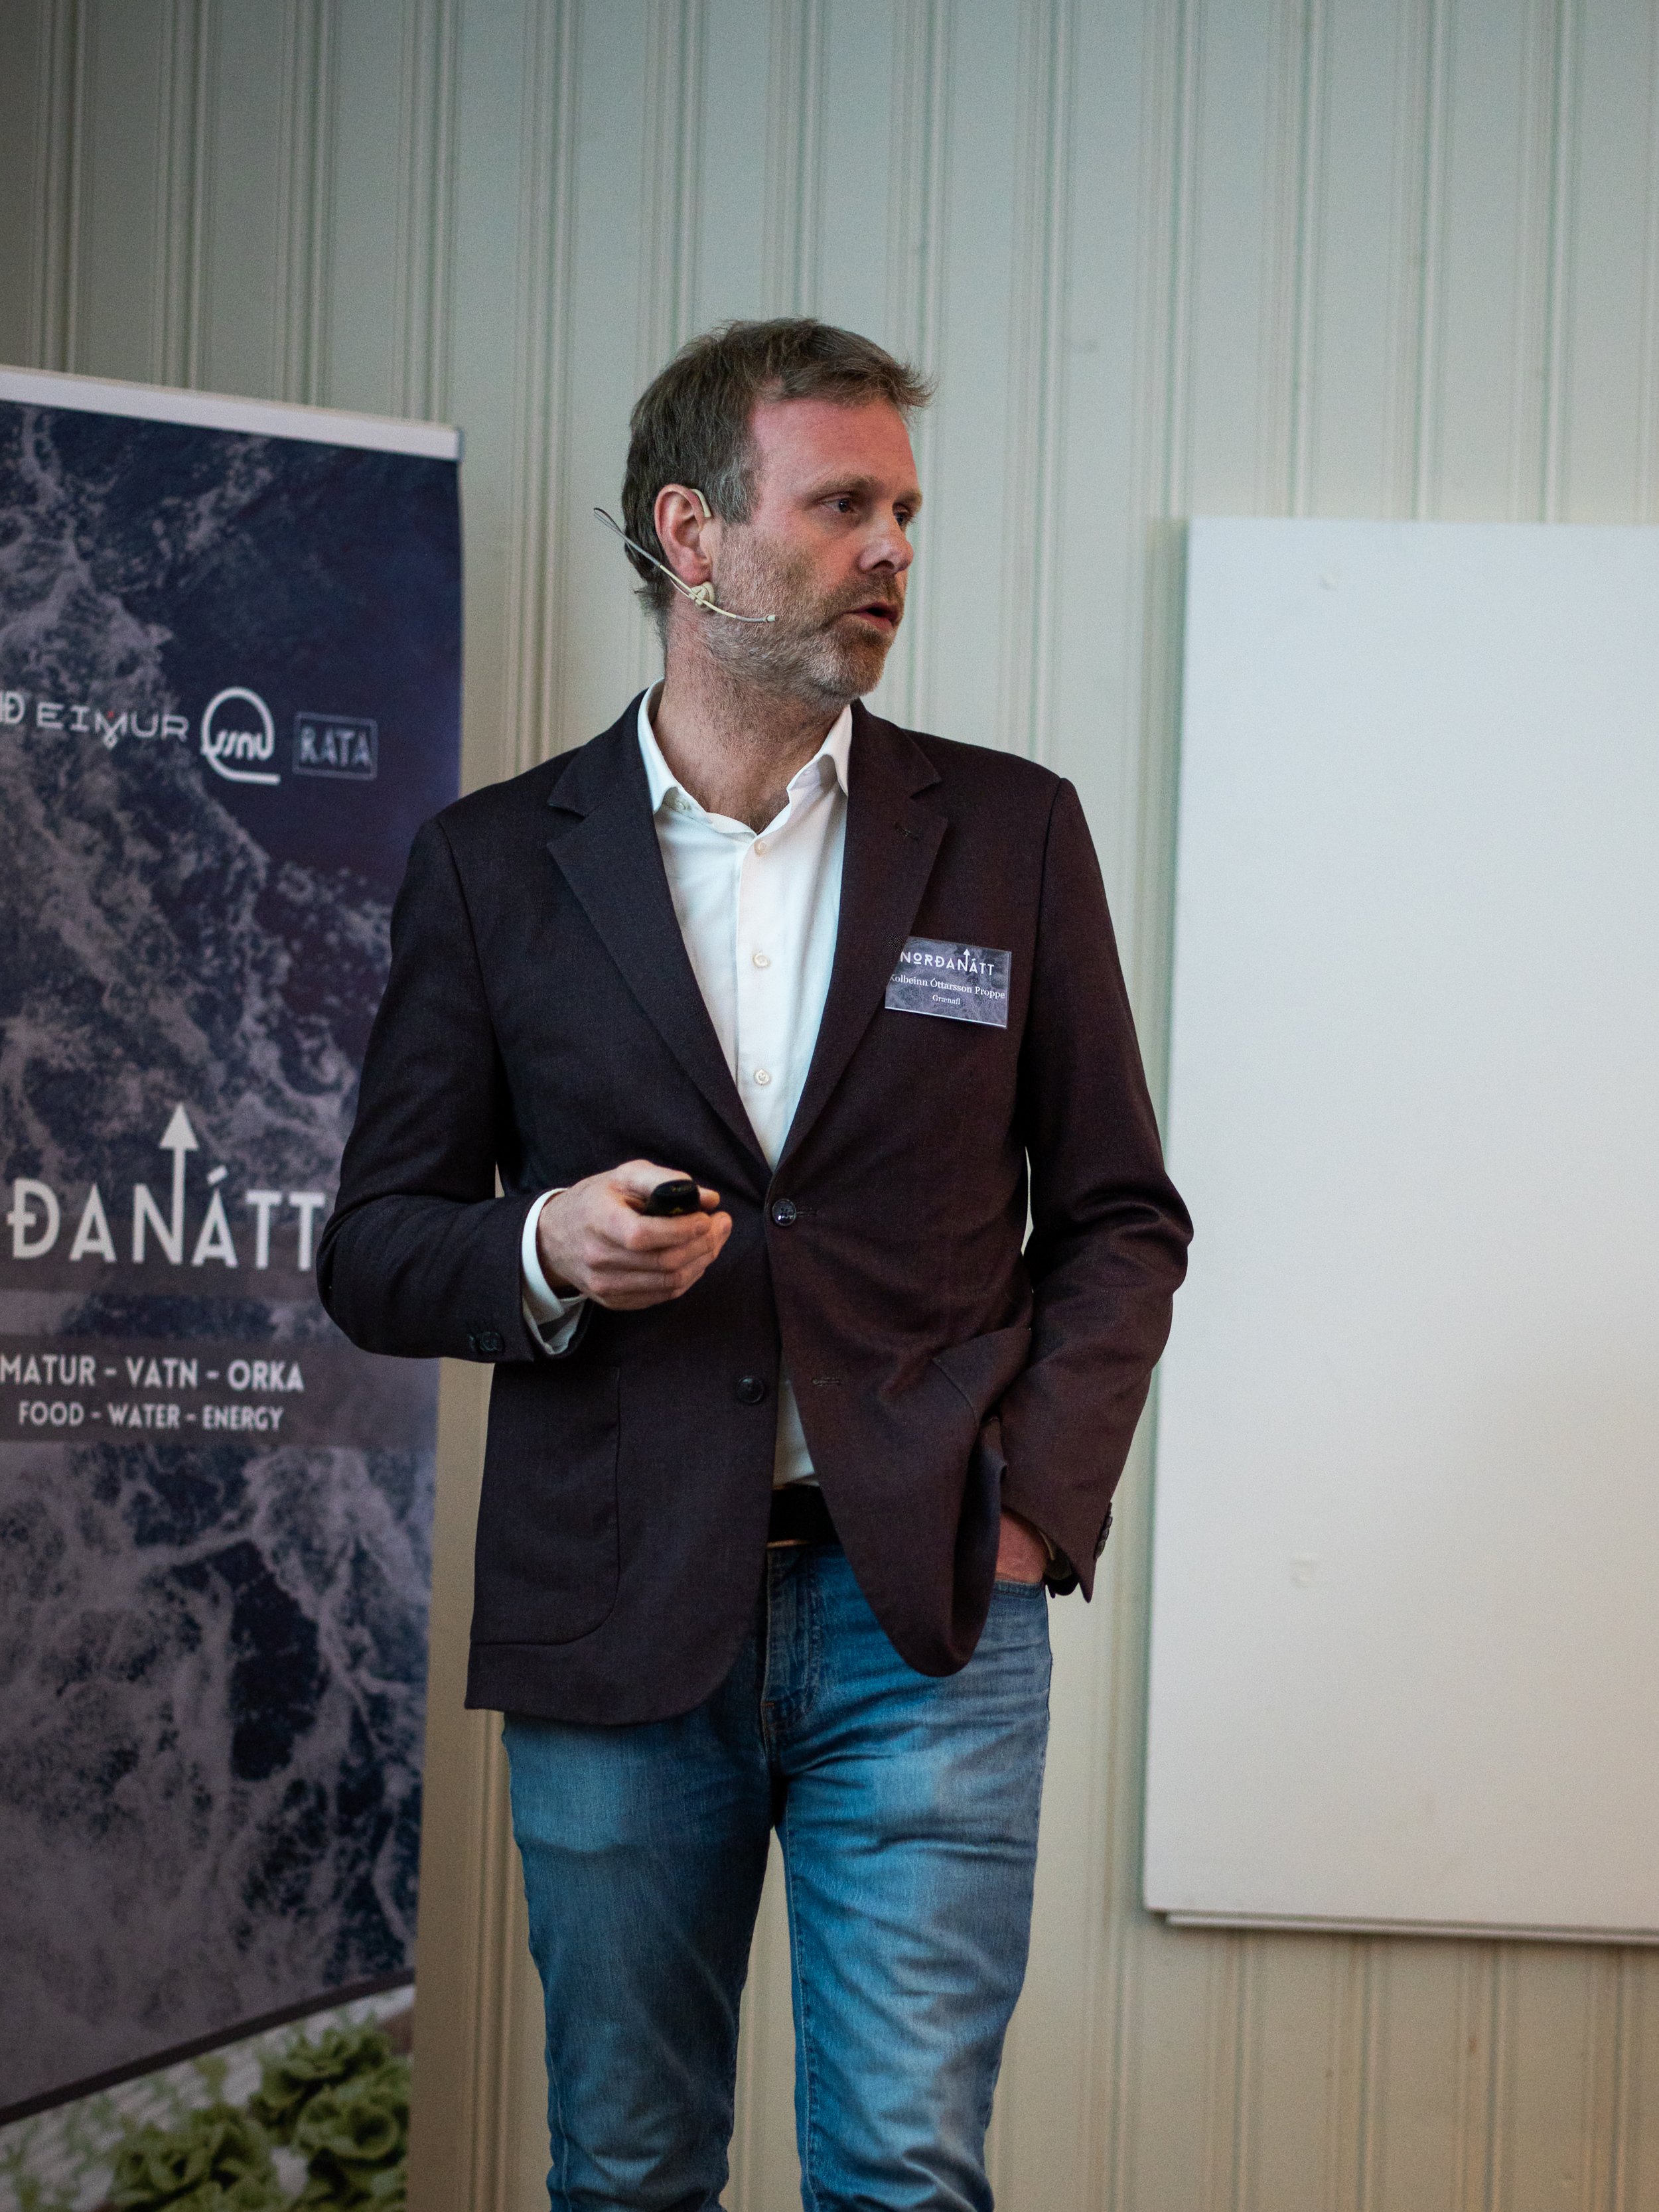 Grænafl with investor presentation